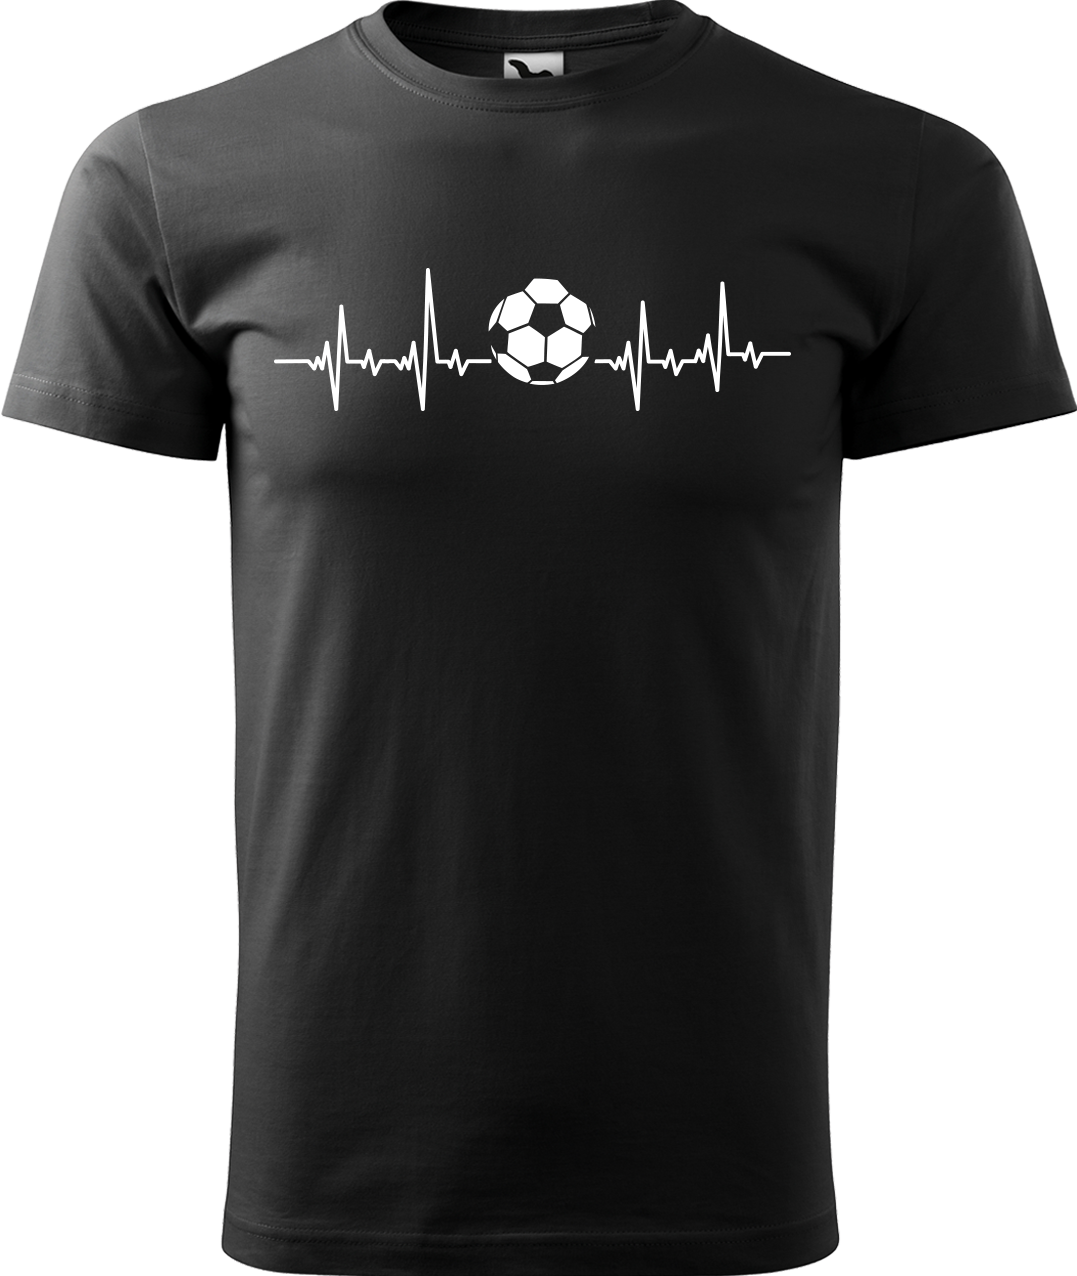 Tričko pro fotbalistu - Fotbalistův kardiogram Velikost: 2XL, Barva: Černá (01)